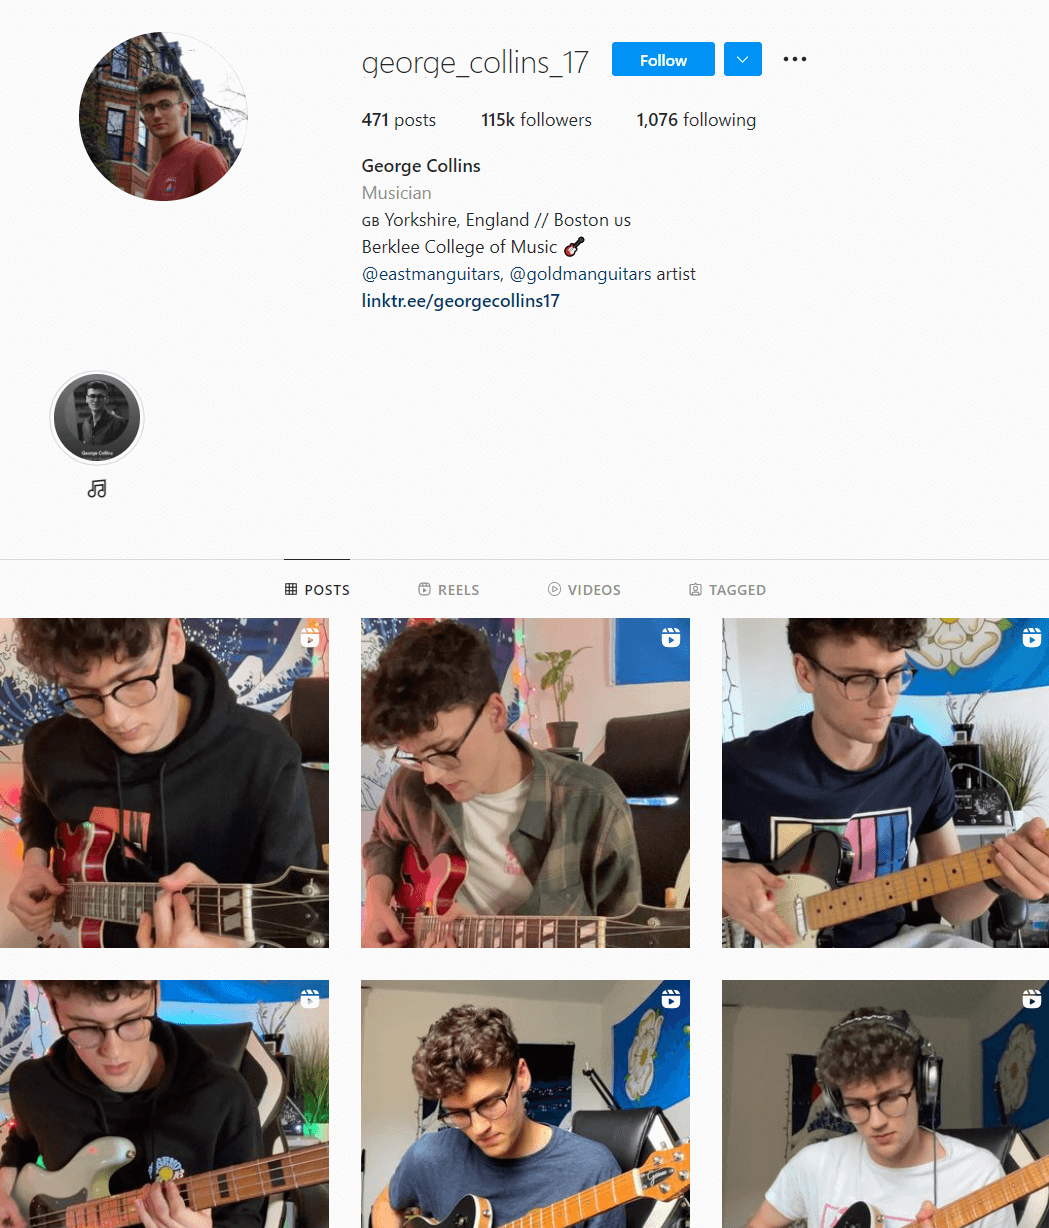 geroge_collins_17 guitar Instagram account